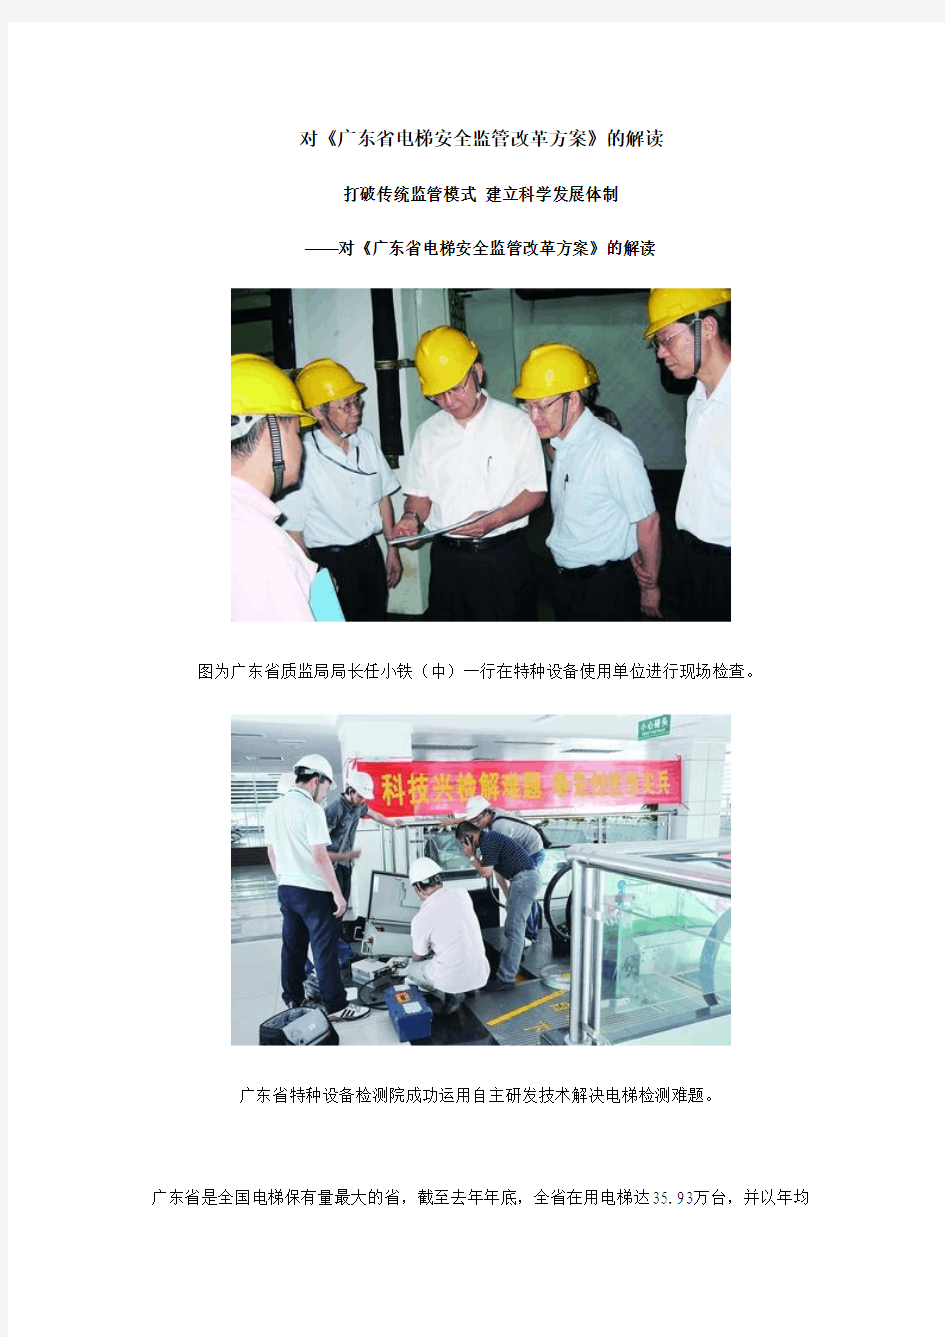 对广东省电梯安全监管改革方案的解读